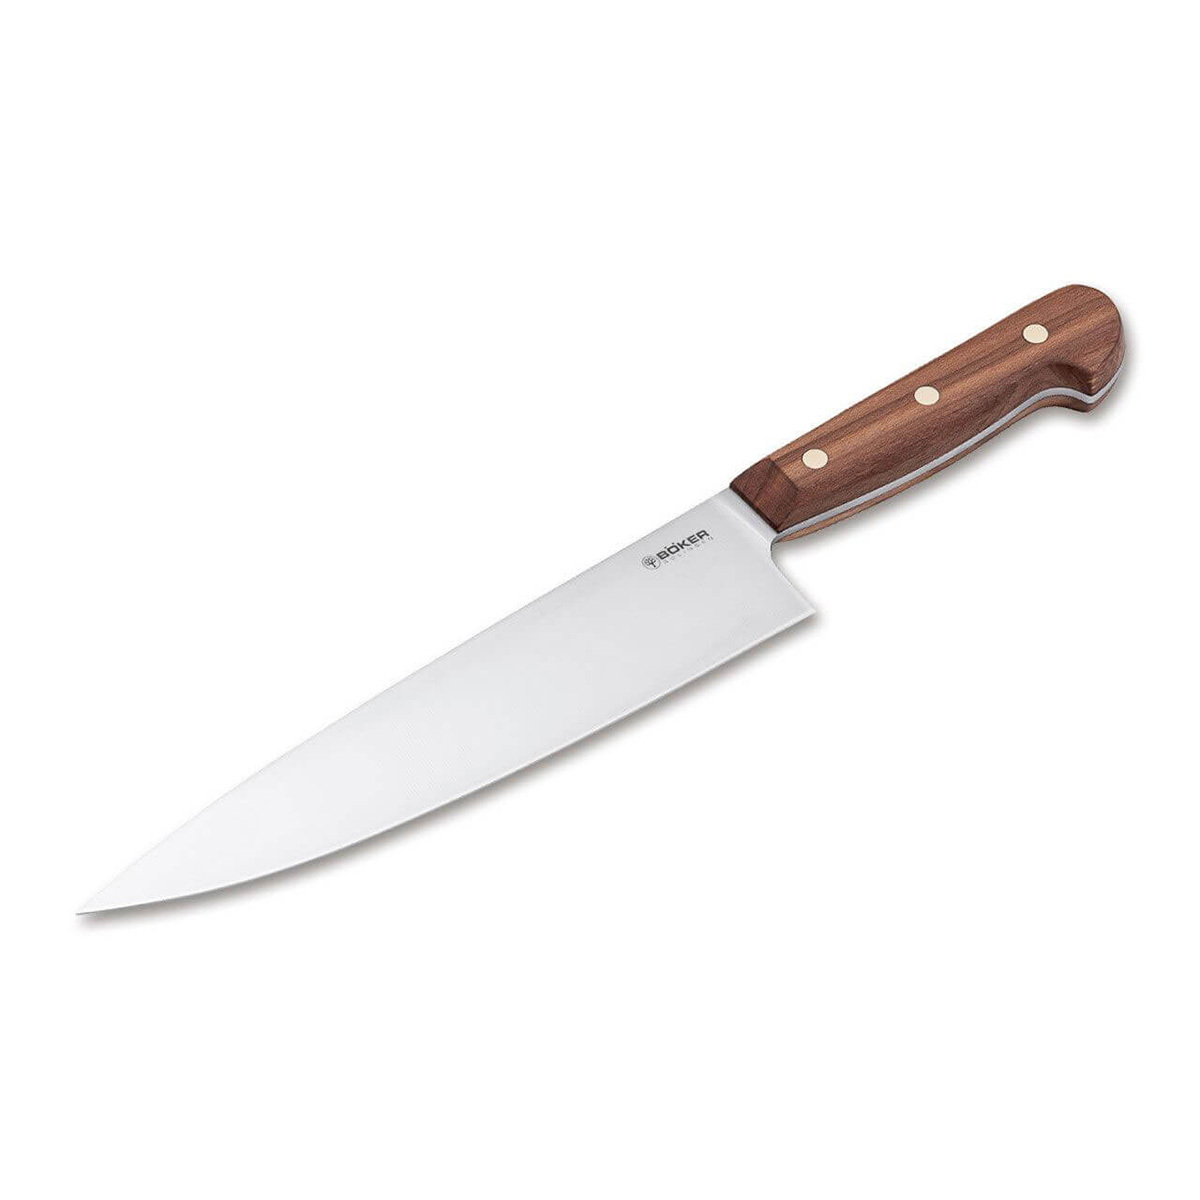 Кухонный нож Boker Cottage-Craft Chef's Knife Large, сталь С75, рукоять дерево